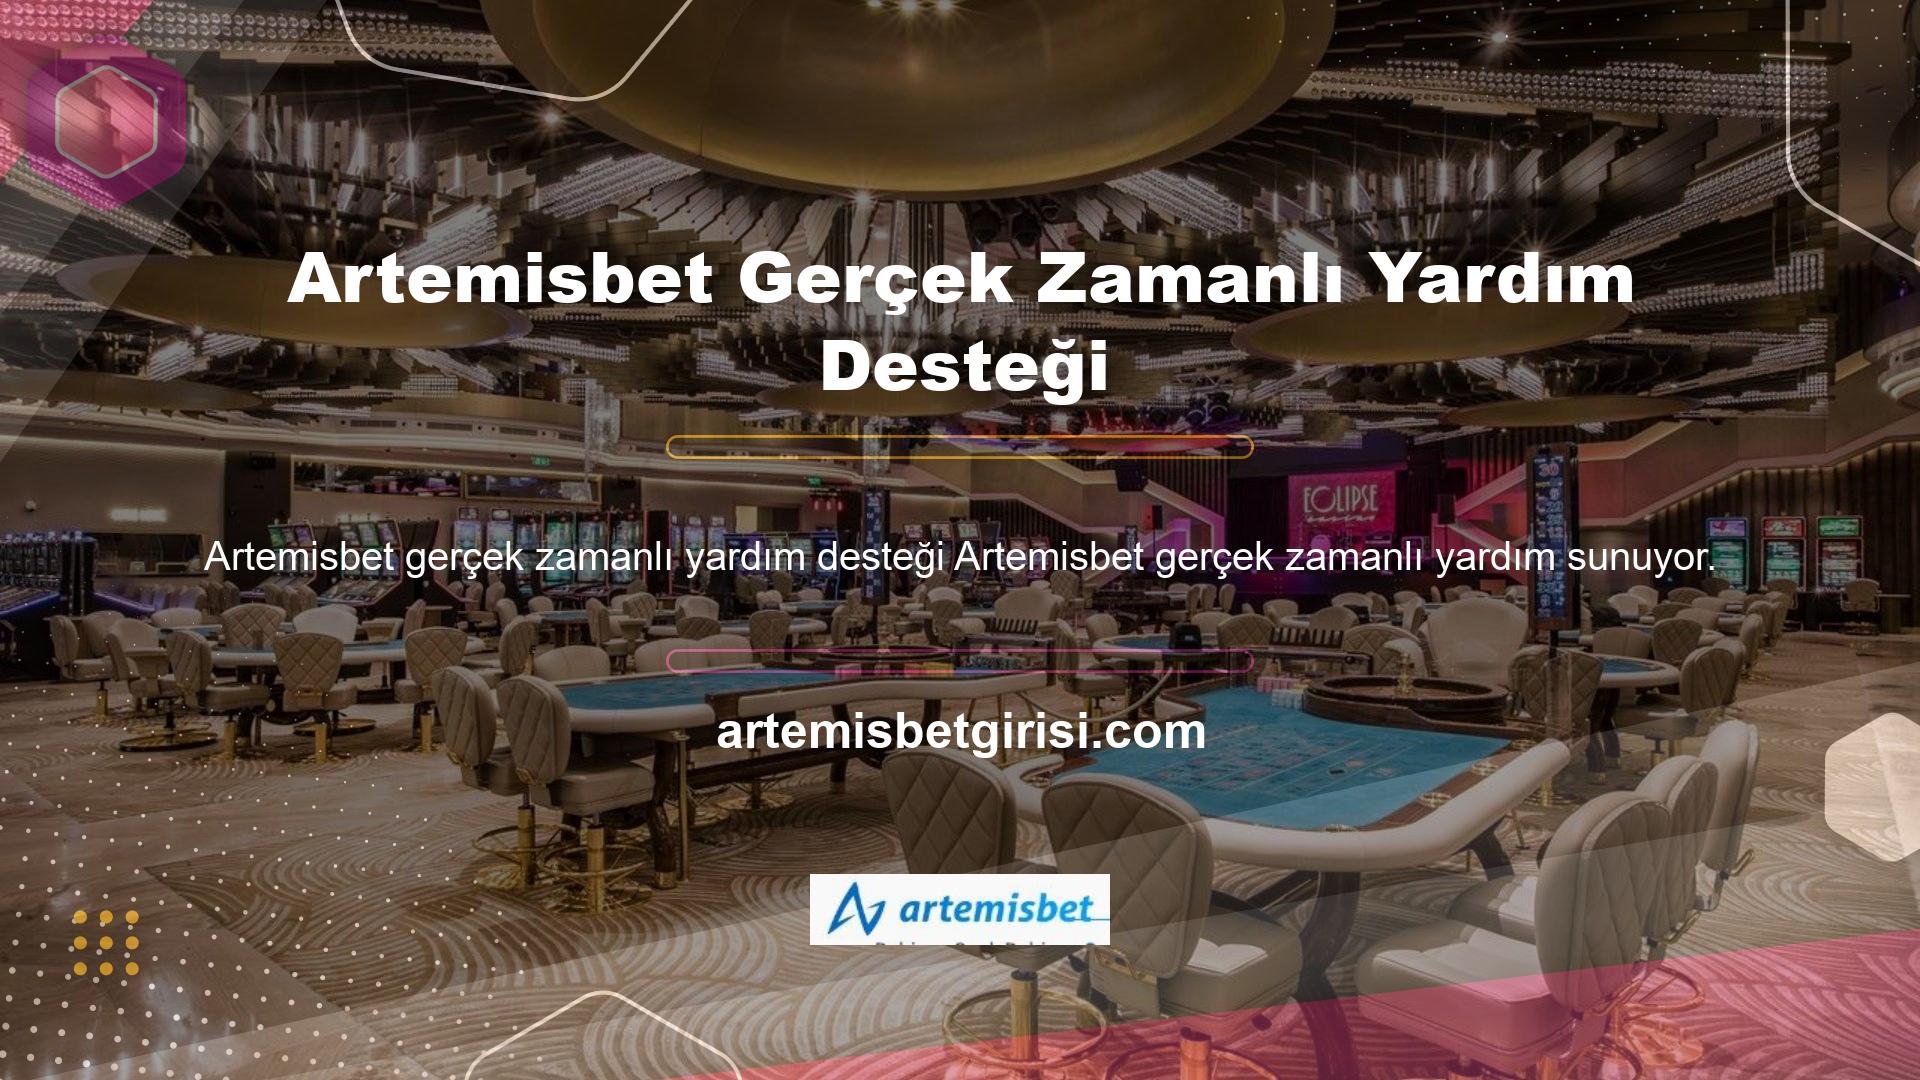 Web sitesinin ana sayfasında Artemisbet ile iş birliği sürecini inceleyin